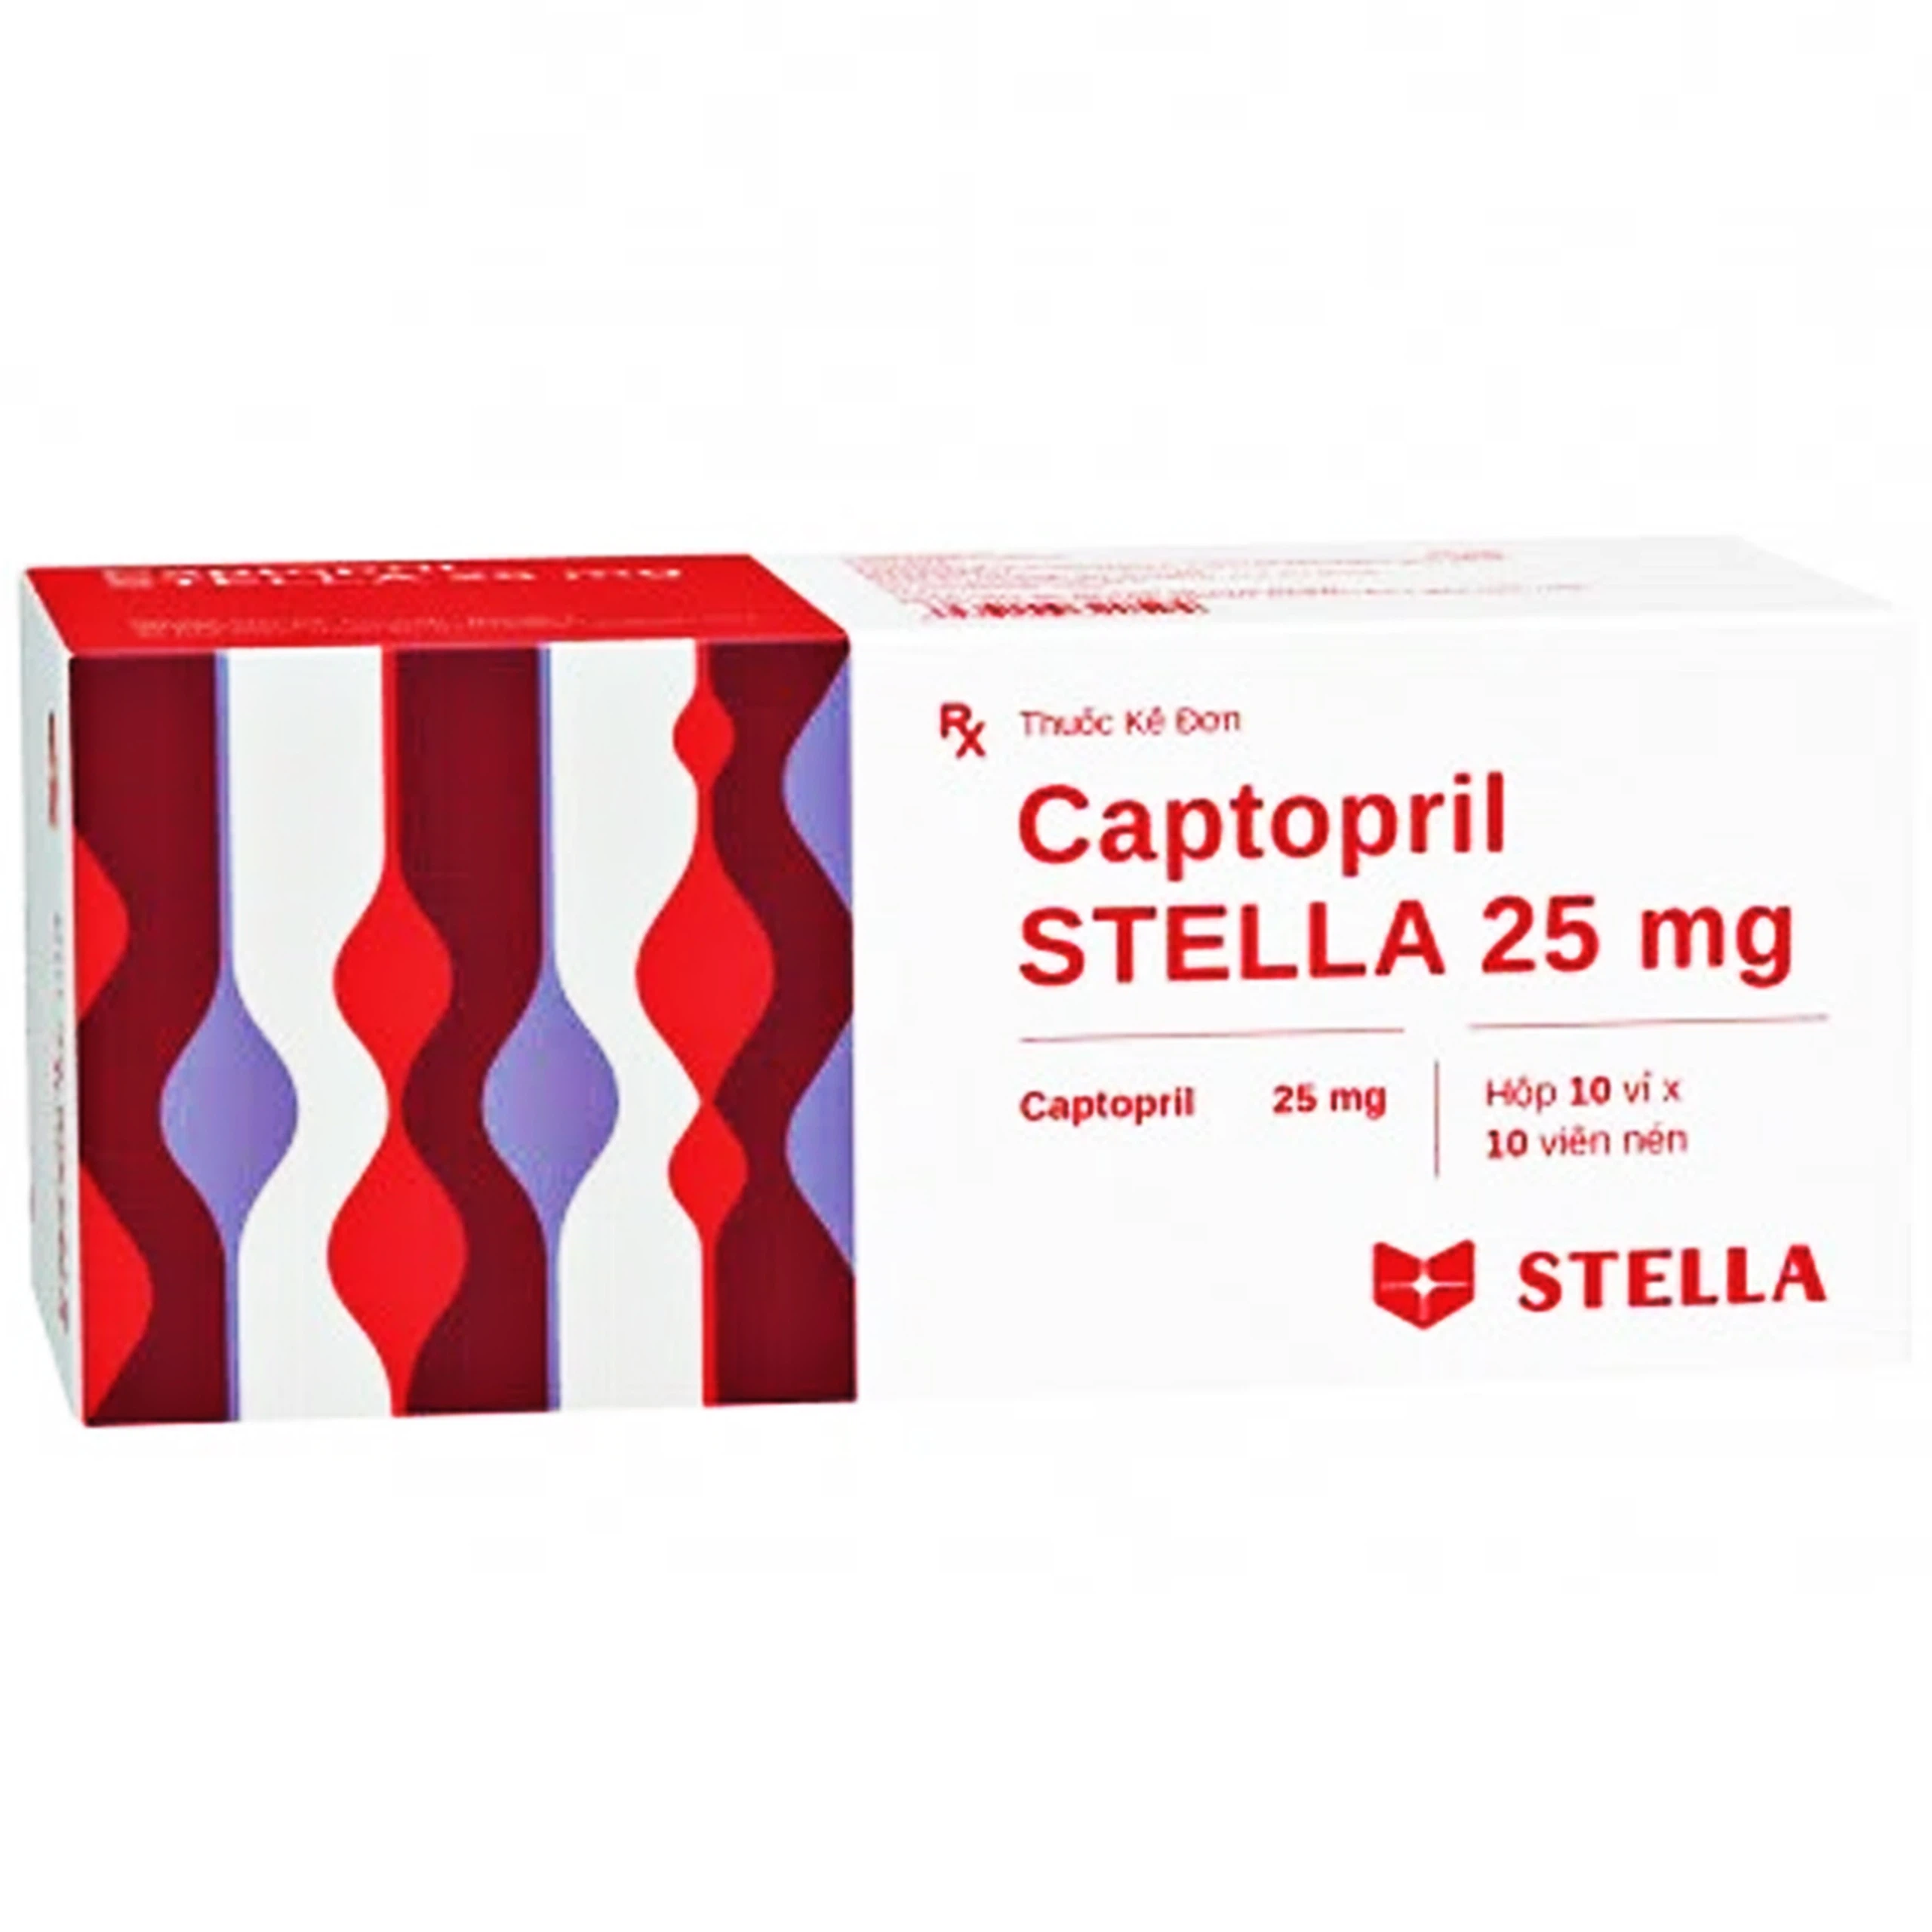 Thuốc Captopril STELLA 25 mg điều trị tăng huyết áp, suy tim sung huyết, nhồi máu cơ tim (10 vỉ x 10 viên)